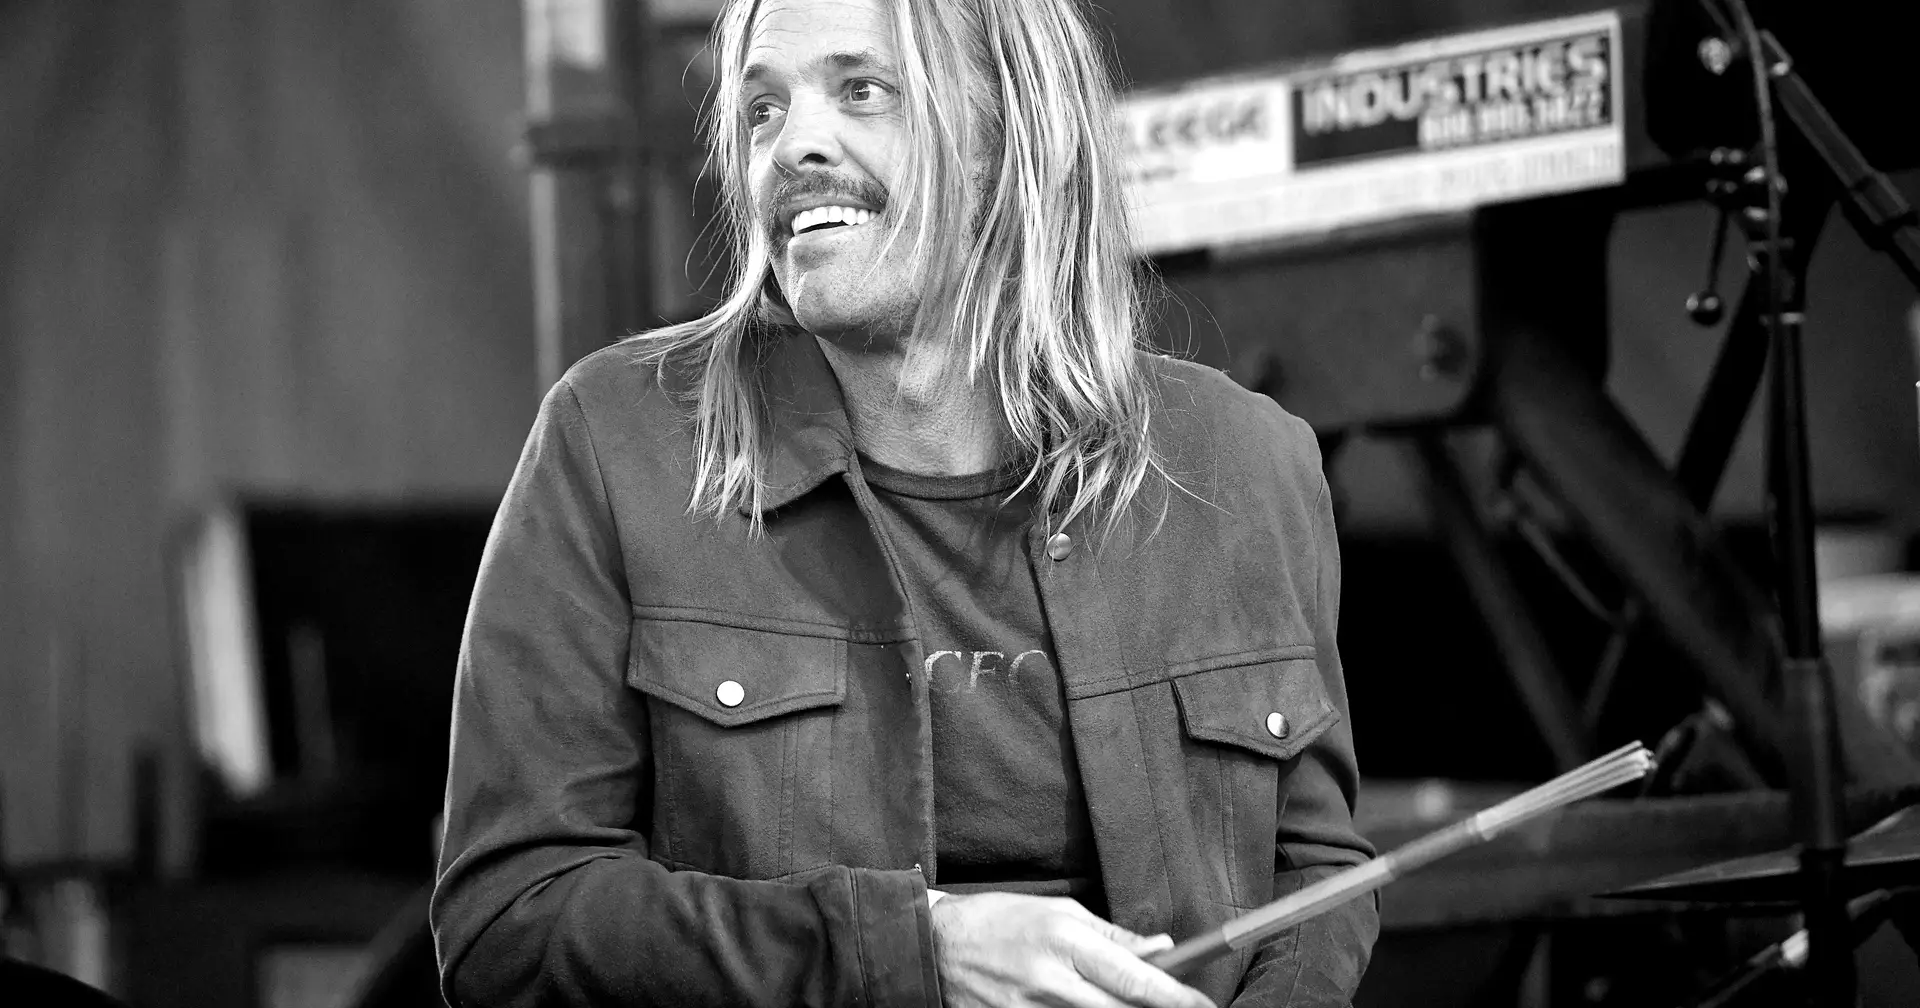 Os últimos dias de Taylor Hawkins dos Foo Fighters. “Ele disse-me que não aguentava mais fazer isto”, revela Matt Cameron dos Pearl Jam